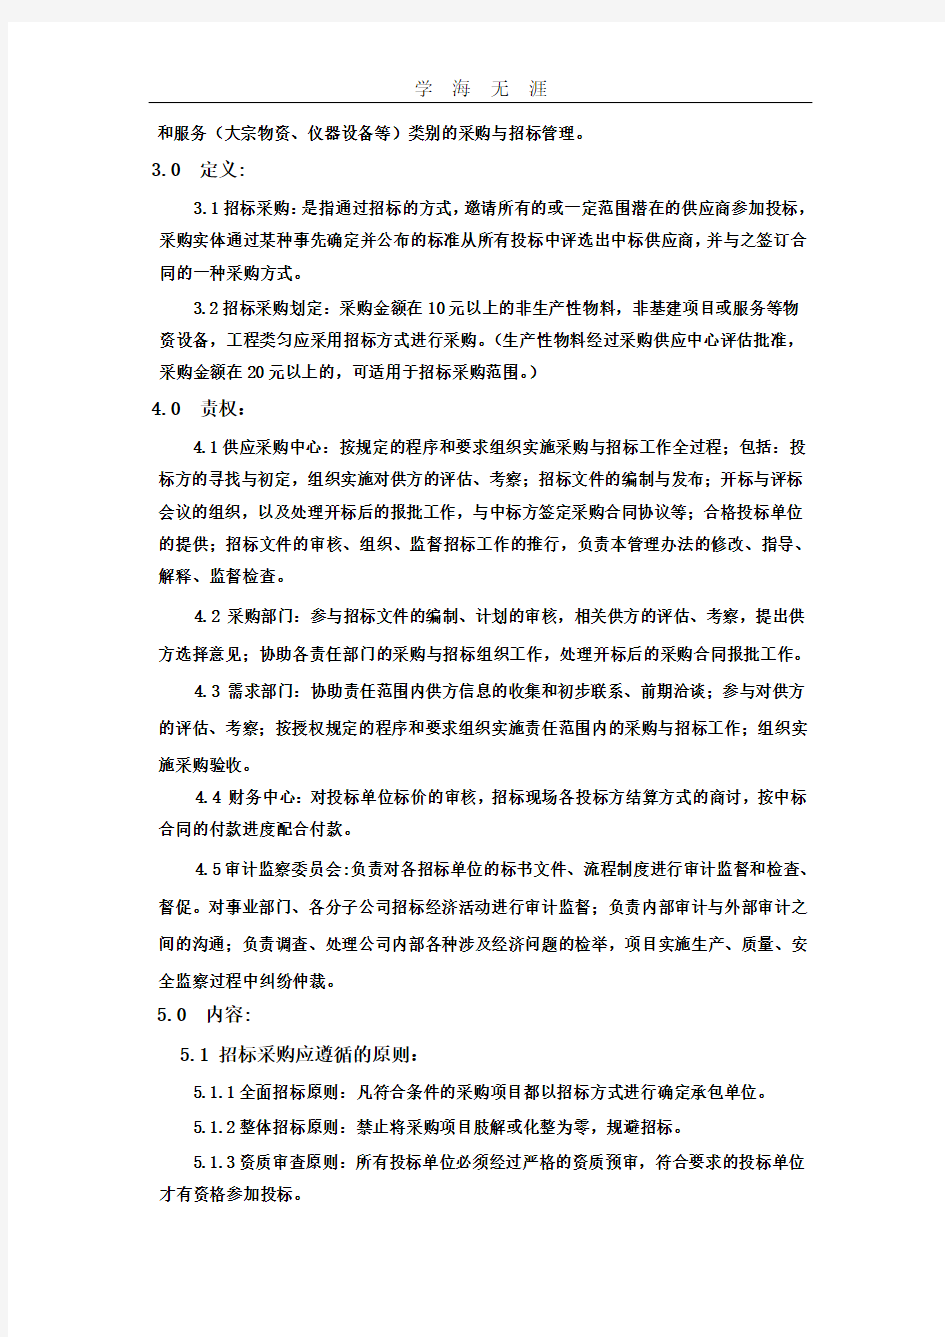 采购招投标管理程序.pdf